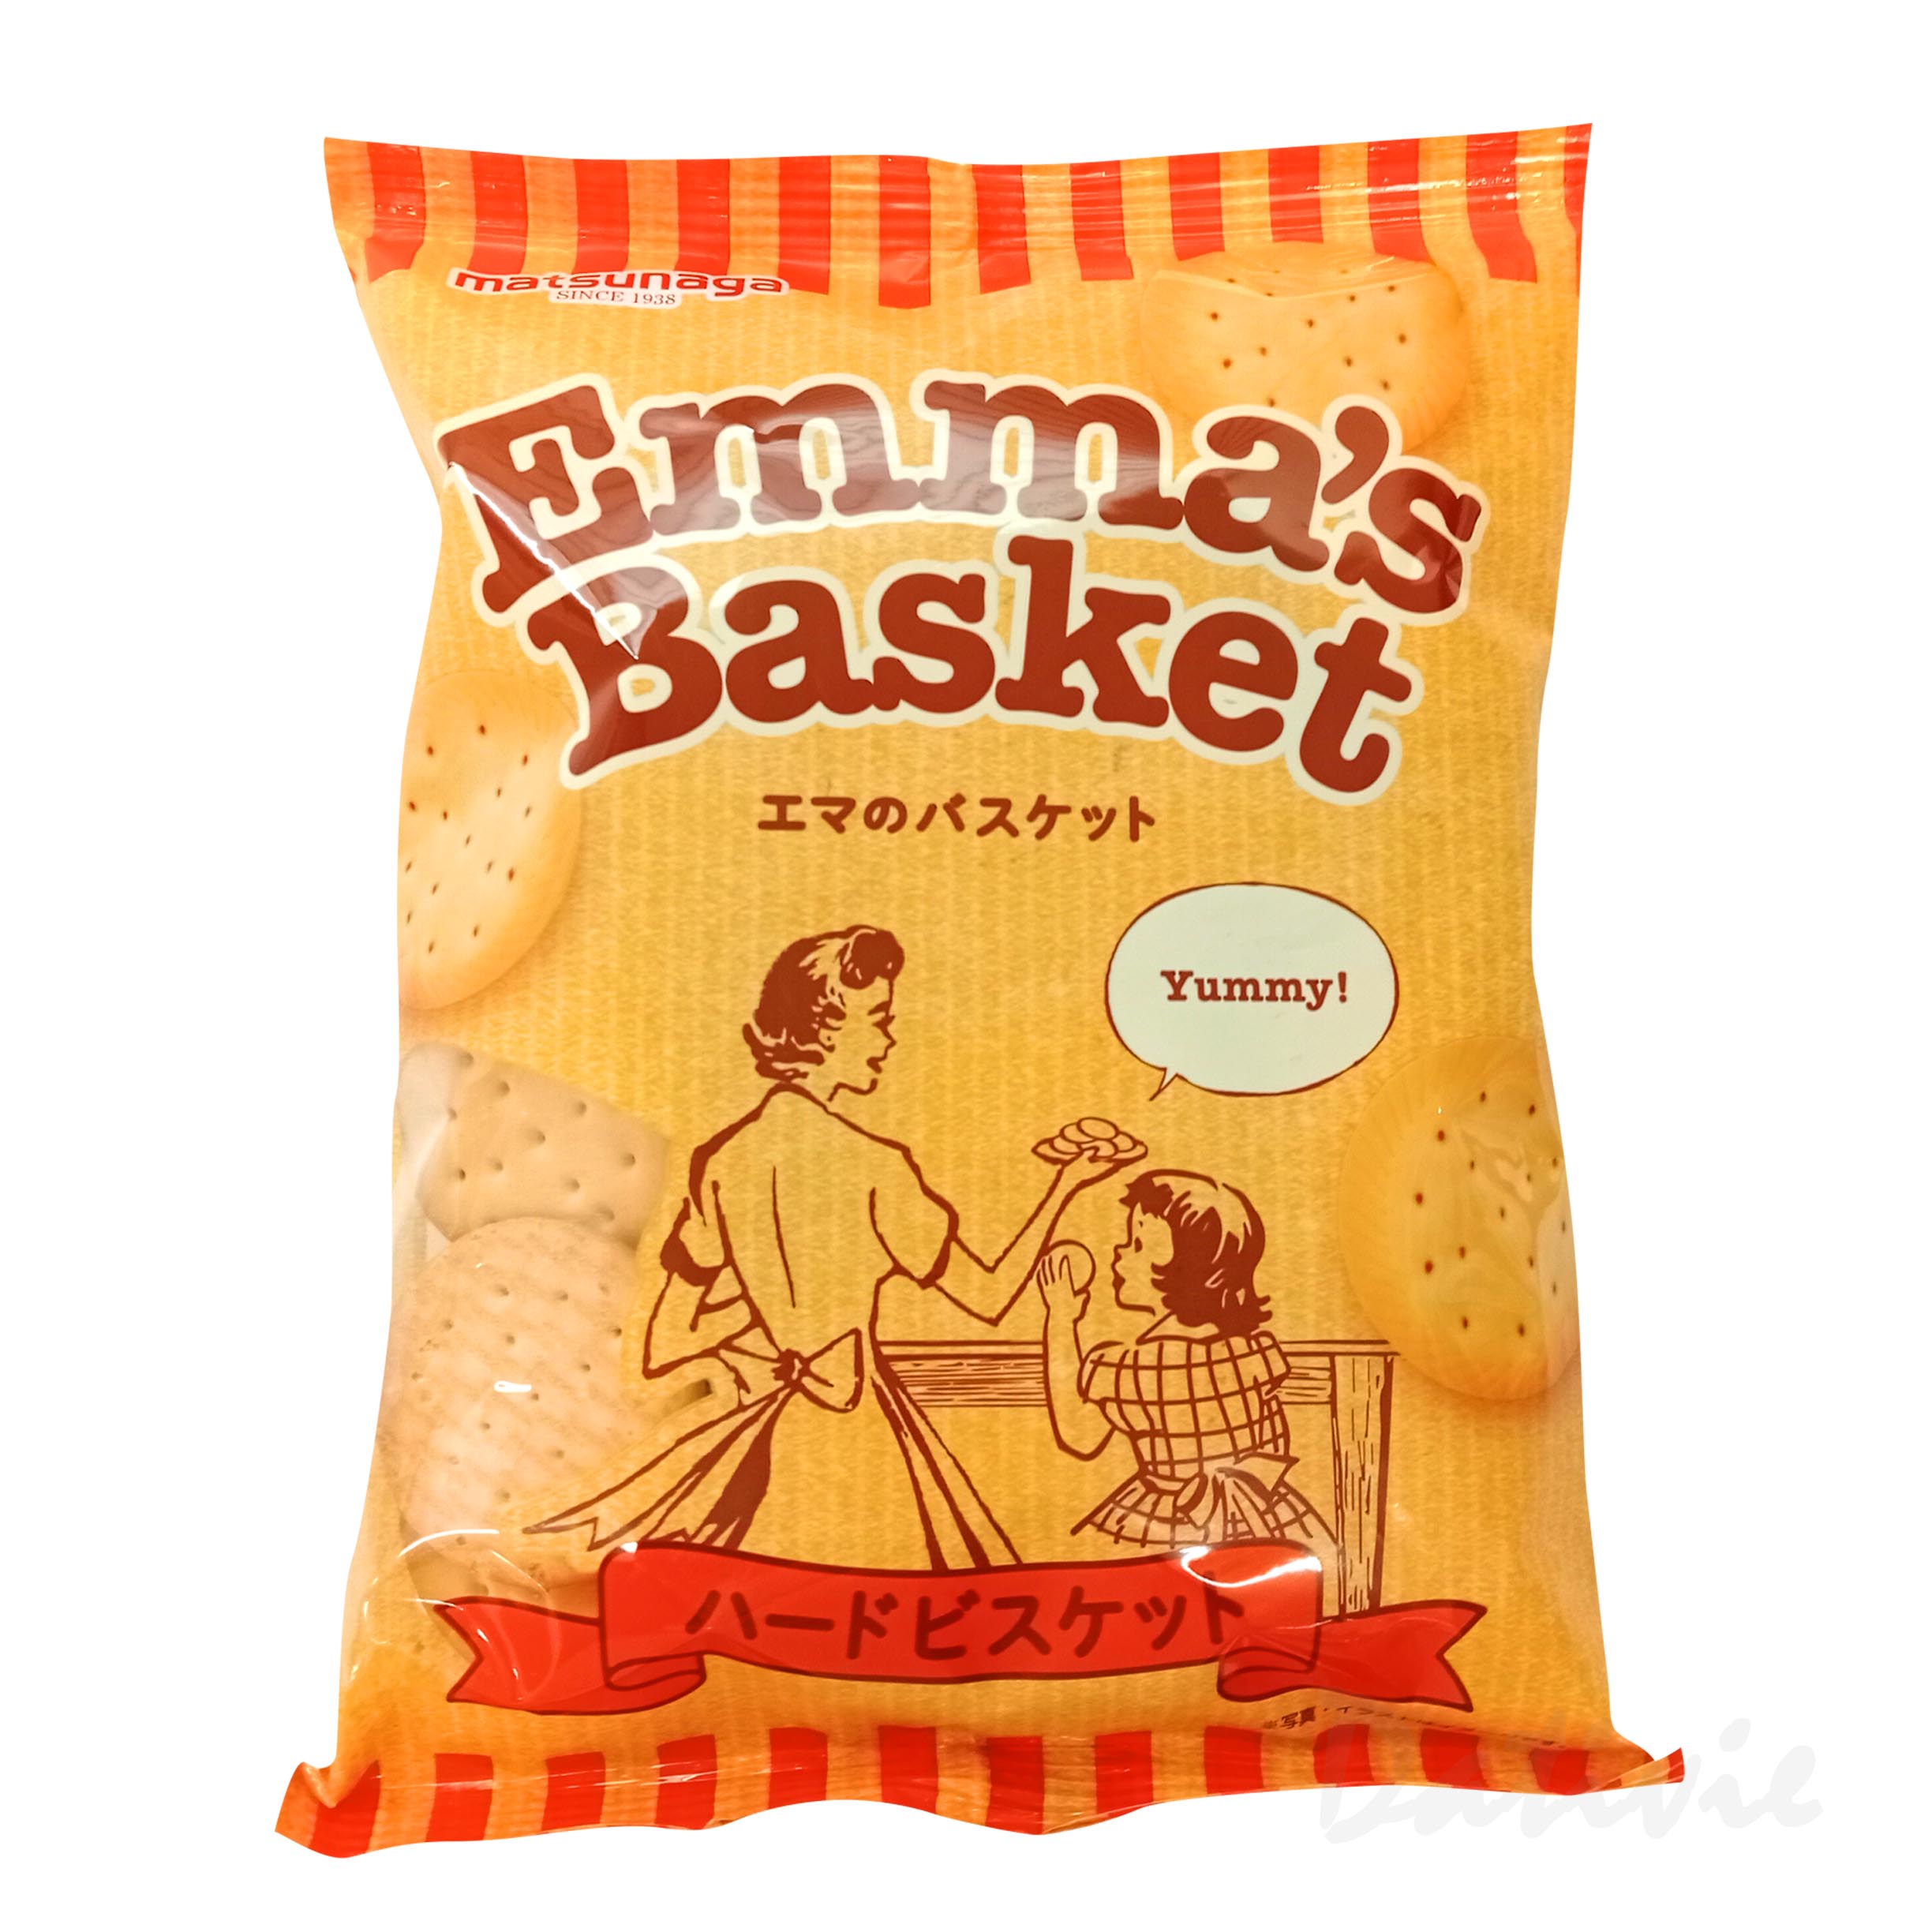 圓形鹽味餅乾-Emma's Basket 松永製菓 日本進口製造